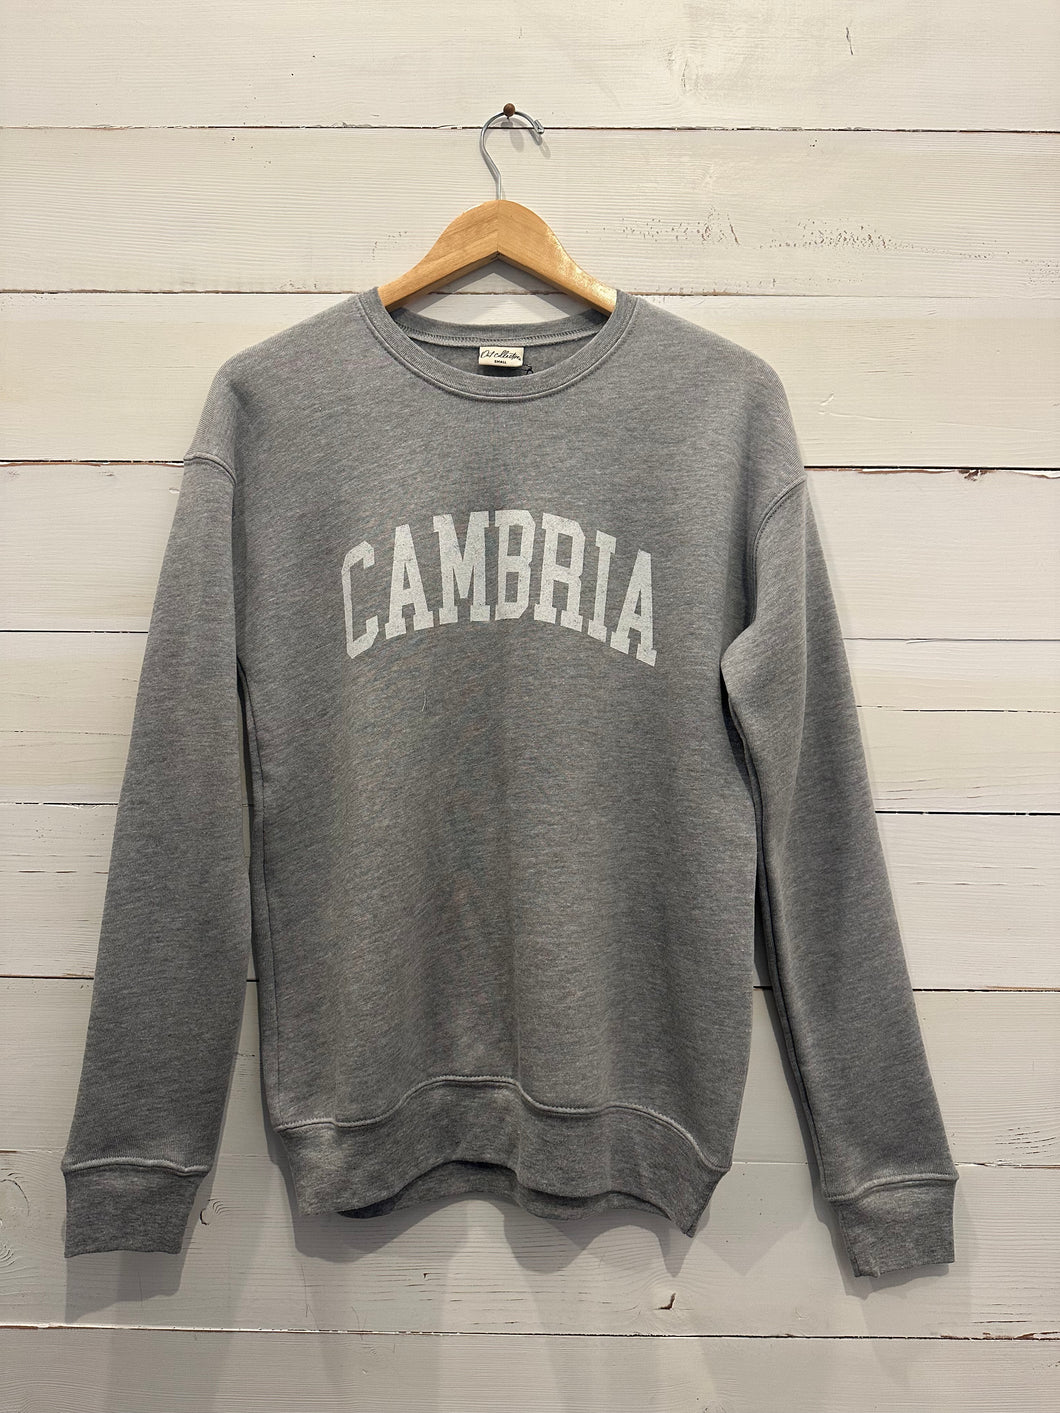 Cambria Sweatshirt